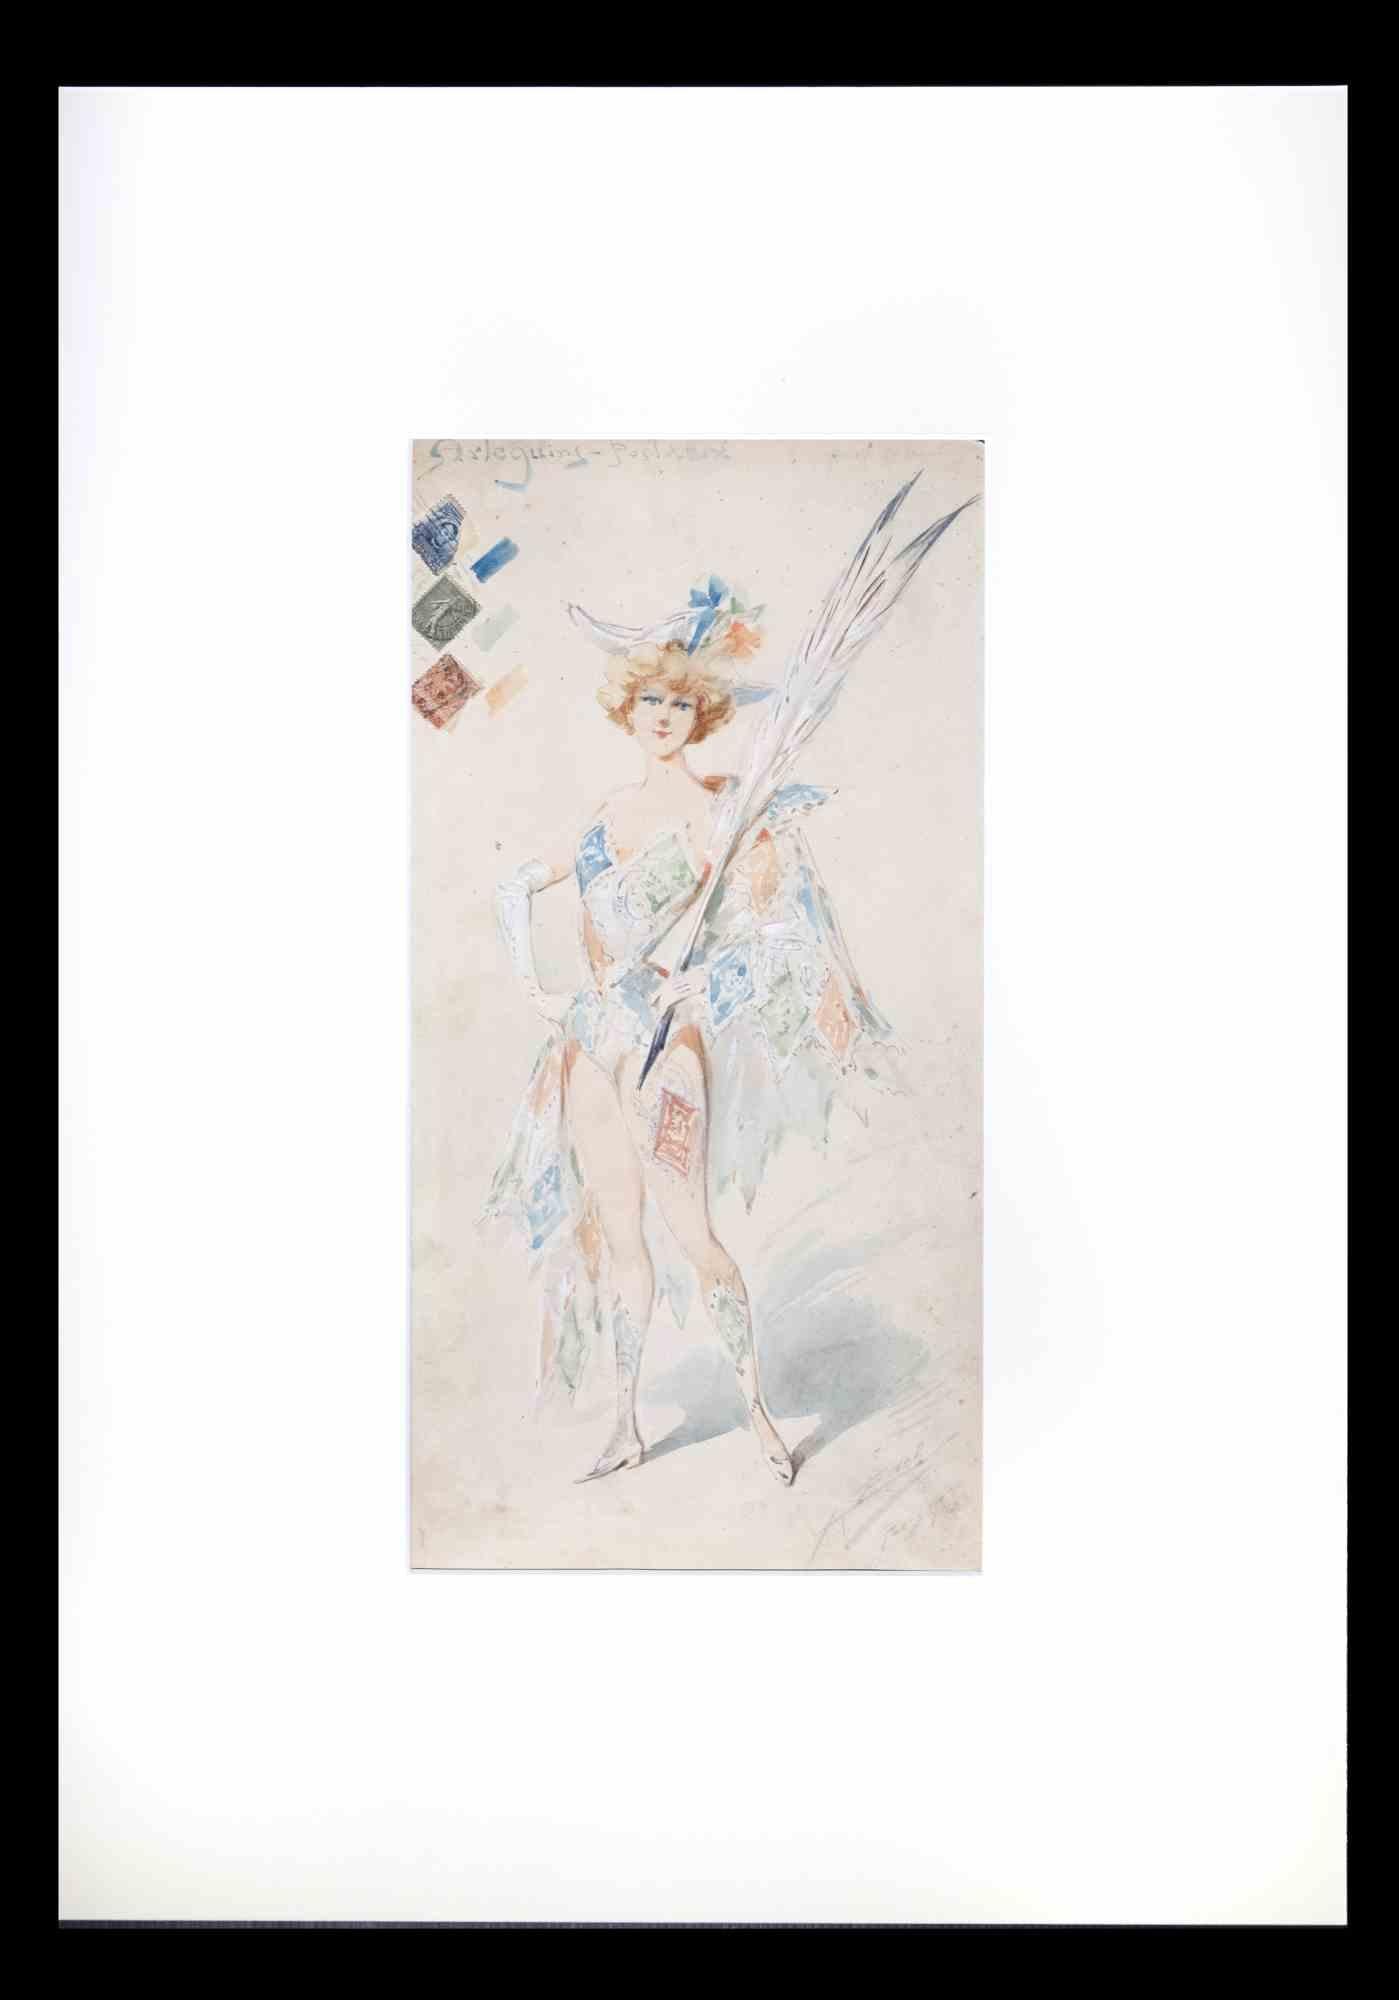 Arlequin est une aquarelle originale réalisée par Alfredo Edel en 1904.

Bon état, inclus un passe-partout en carton blanc ( 69x49 cm).

Signé à la main par l'artiste.

Alfredo Leonardo Edel (1856-1912), parfois crédité sous le nom d'Alfredo Edel